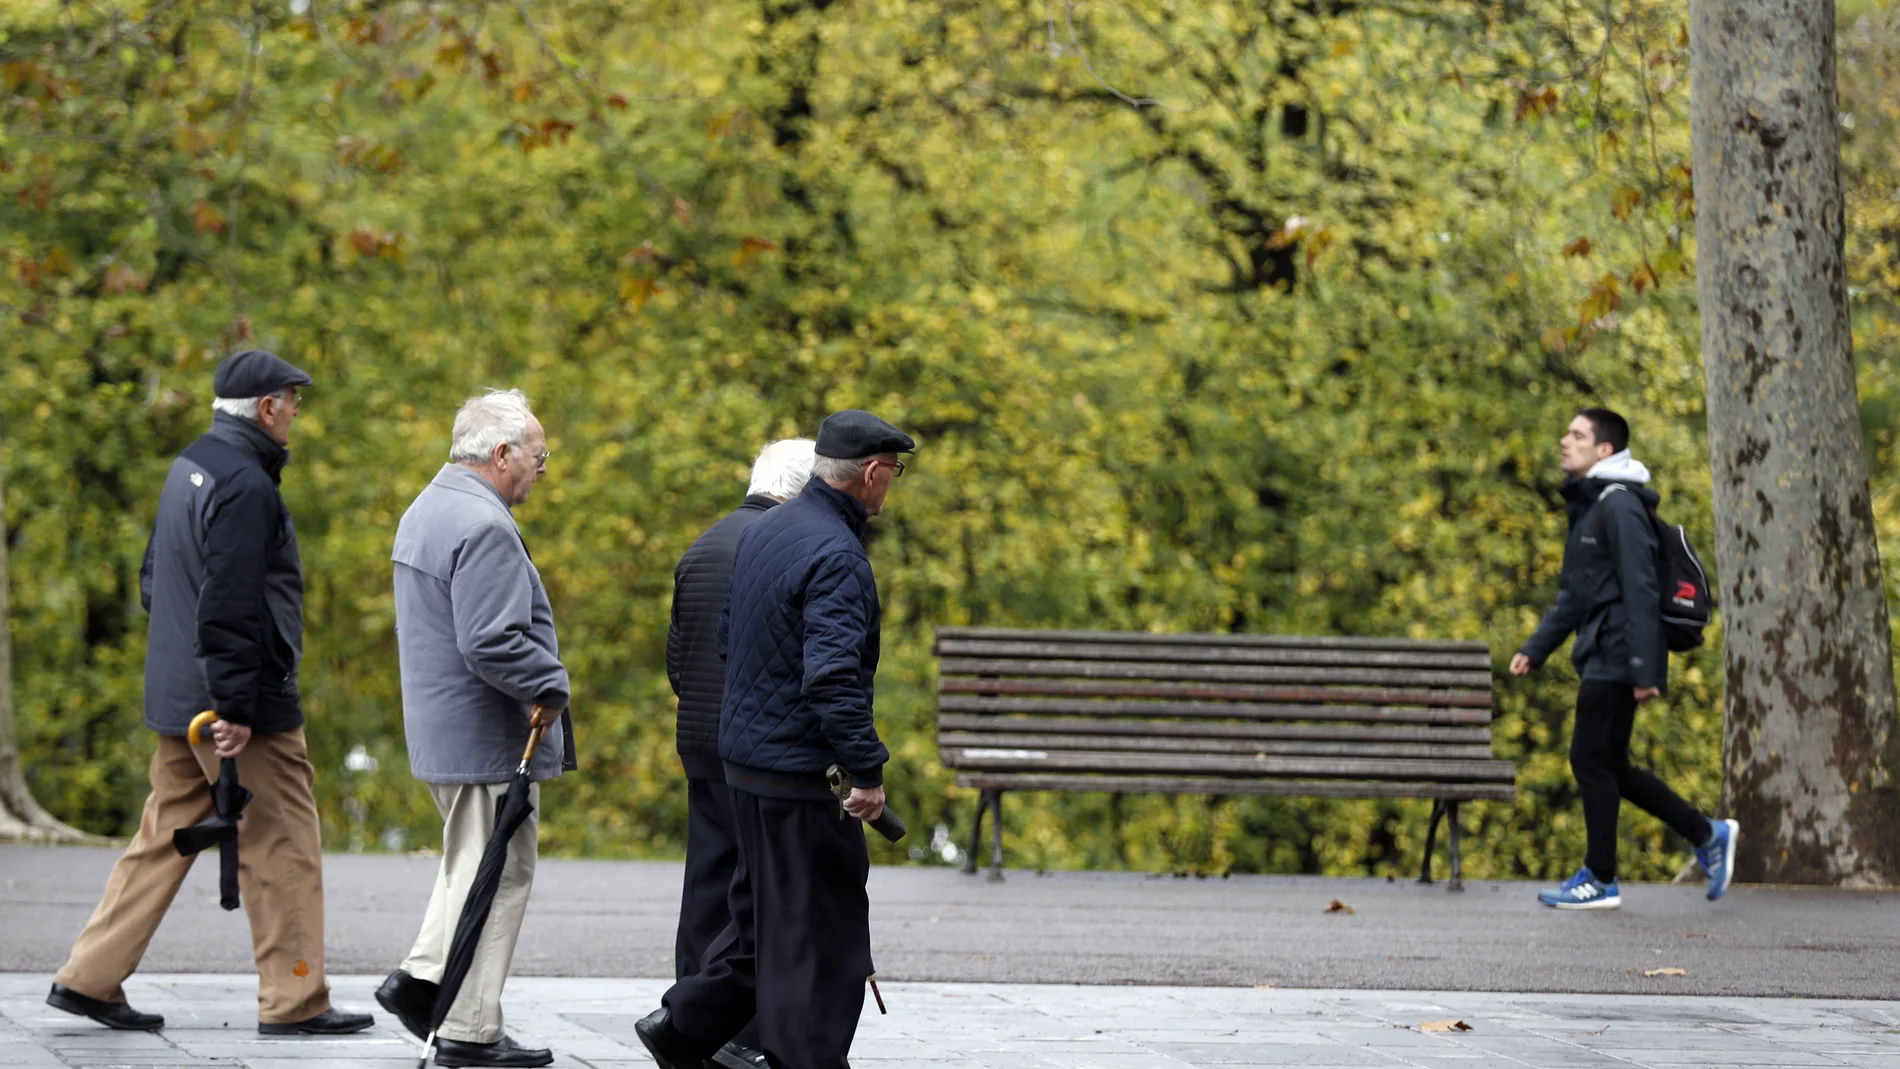 "Baby boomers" descartan seguir en activo, pese a prever pensión insuficiente